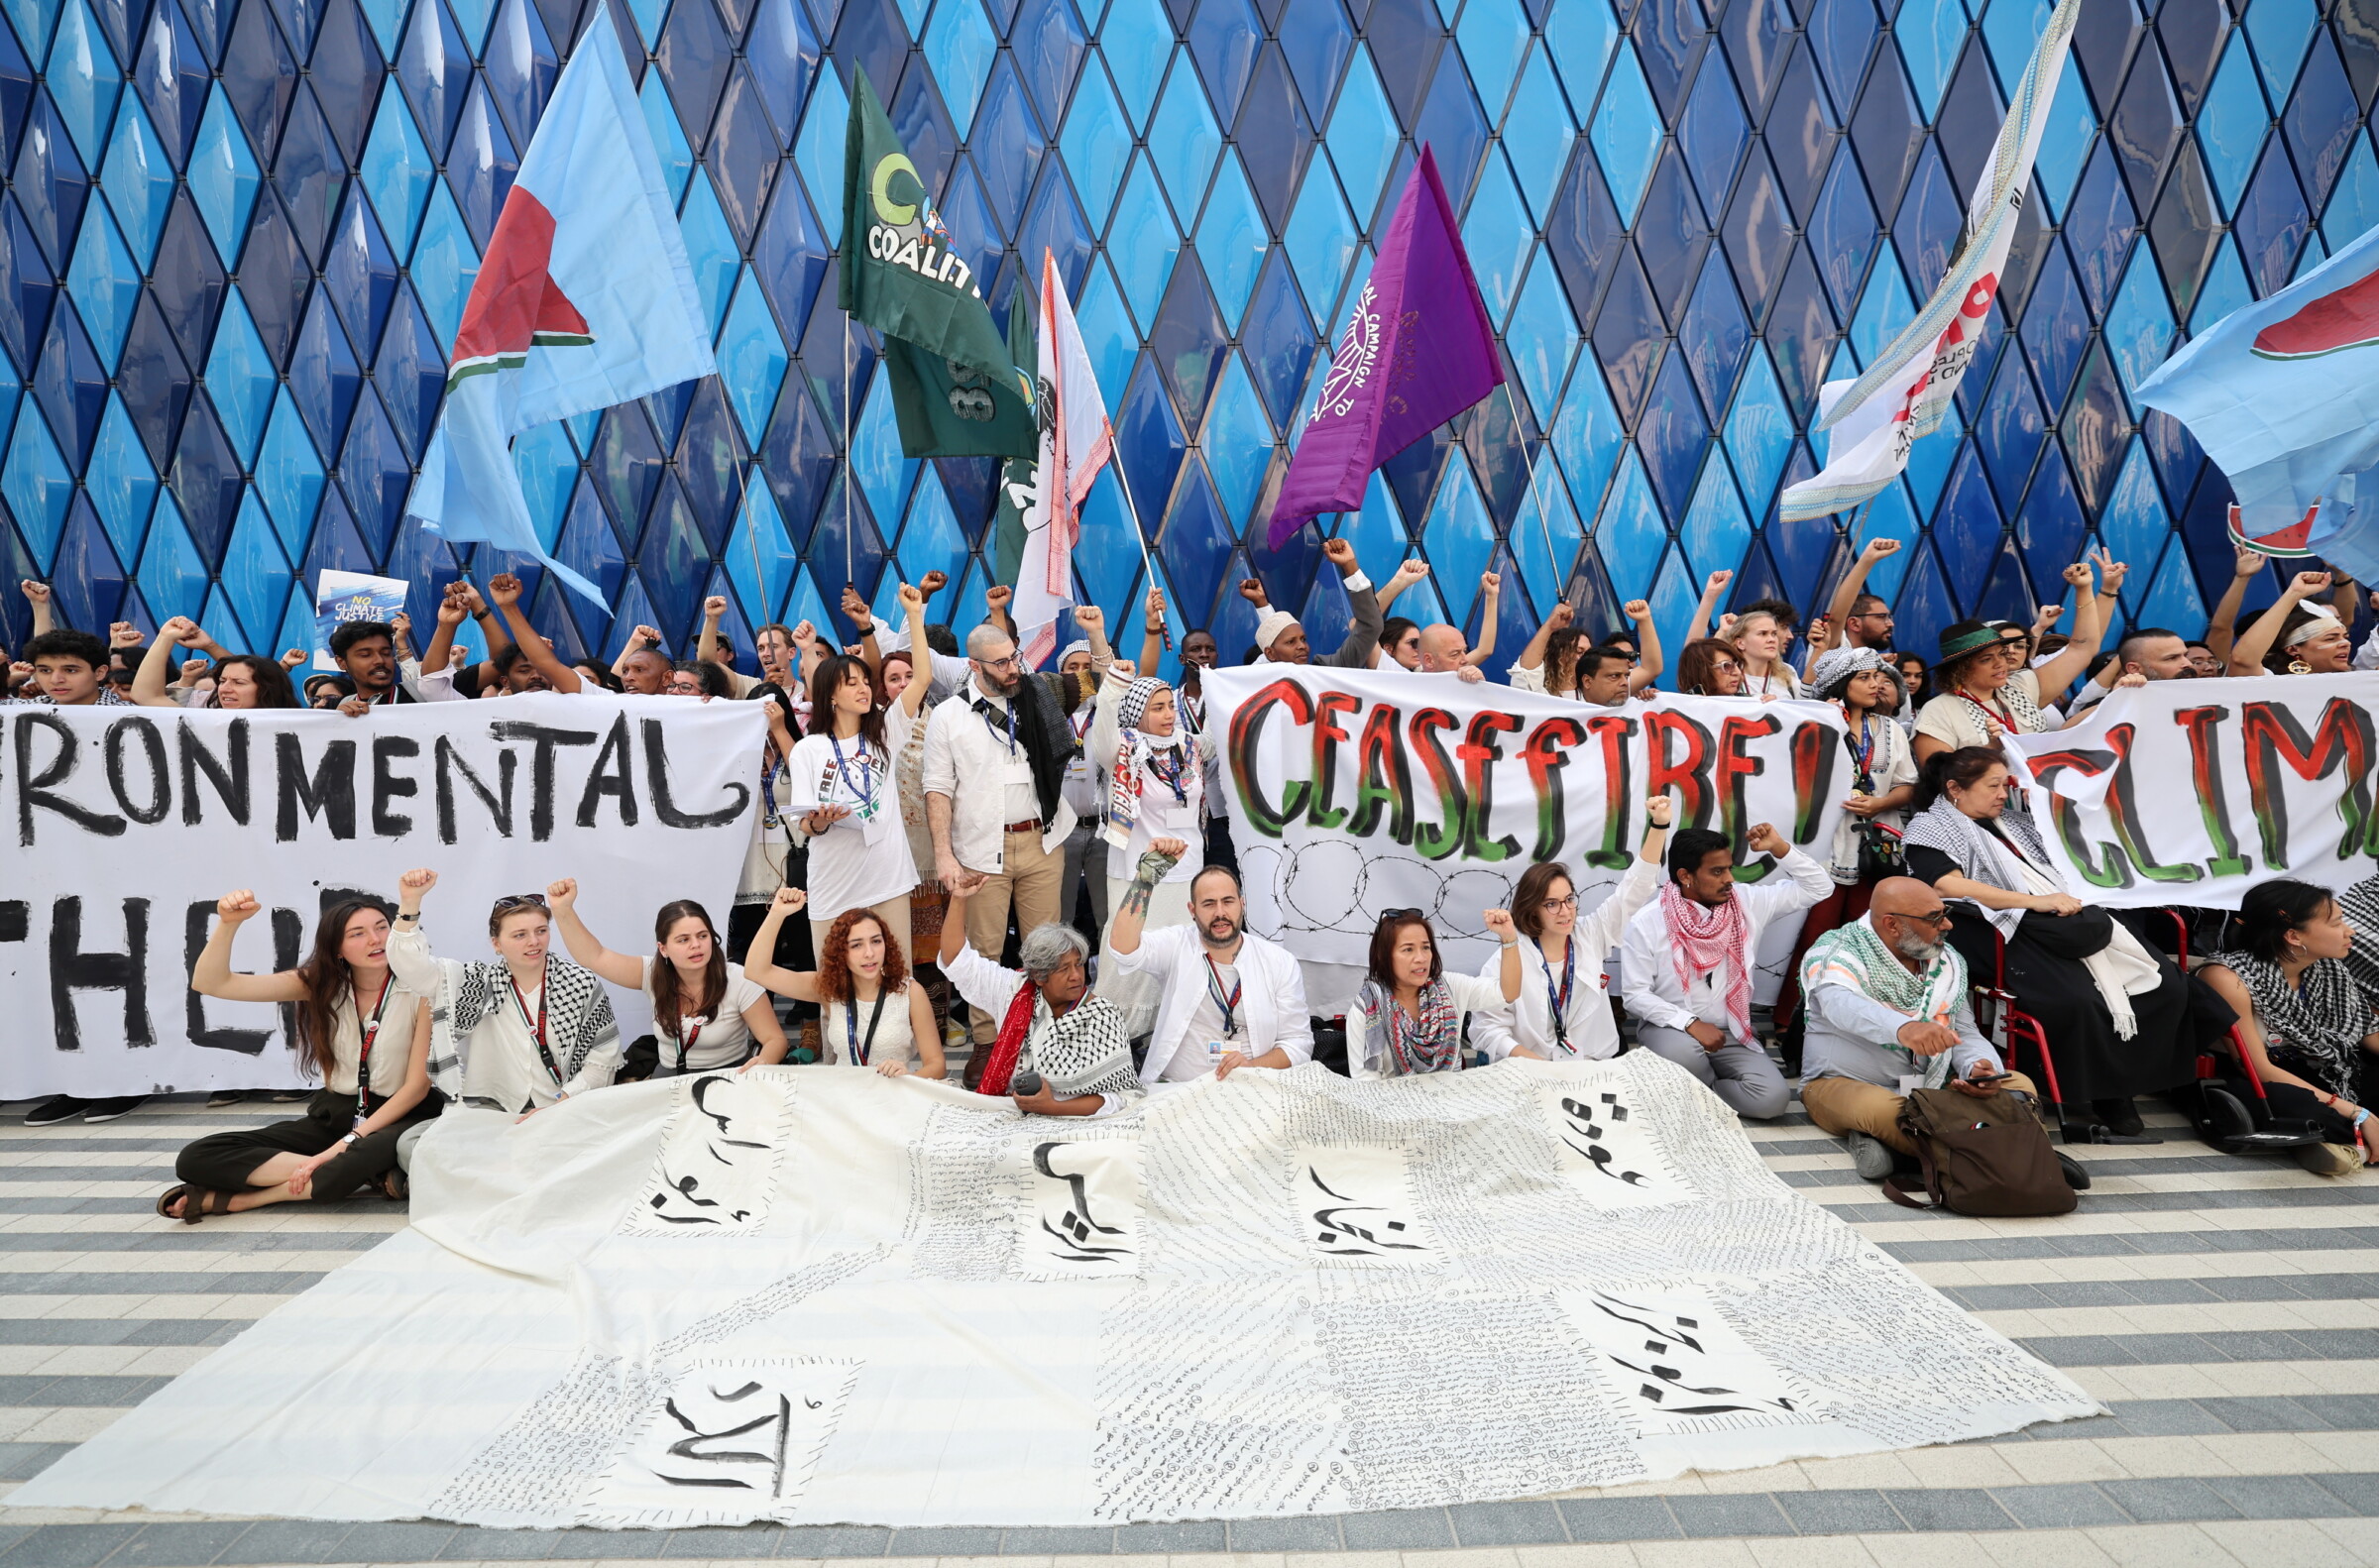 Ακτιβιστές διαδηλώνουν υπέρ της Παλαιστίνης κατά τη διάρκεια της COP 28 στο Expo City Dubai. Κάποιοι είναι καθισμένοι και κάποιοι όρθιοι κρατώντας σημαίες που απεικονίζουν ένα καρπούζι (σύμβολο αλληλεγγύης για την Παλαιστίνη) και πανό που γράφουν μεταξύ άλλων «Περιβαλλοντικό Απαρτχάιντ» και «Εκεχειρία».
Φωτογραφία: Ali Haider, EPA, 03/12/2023